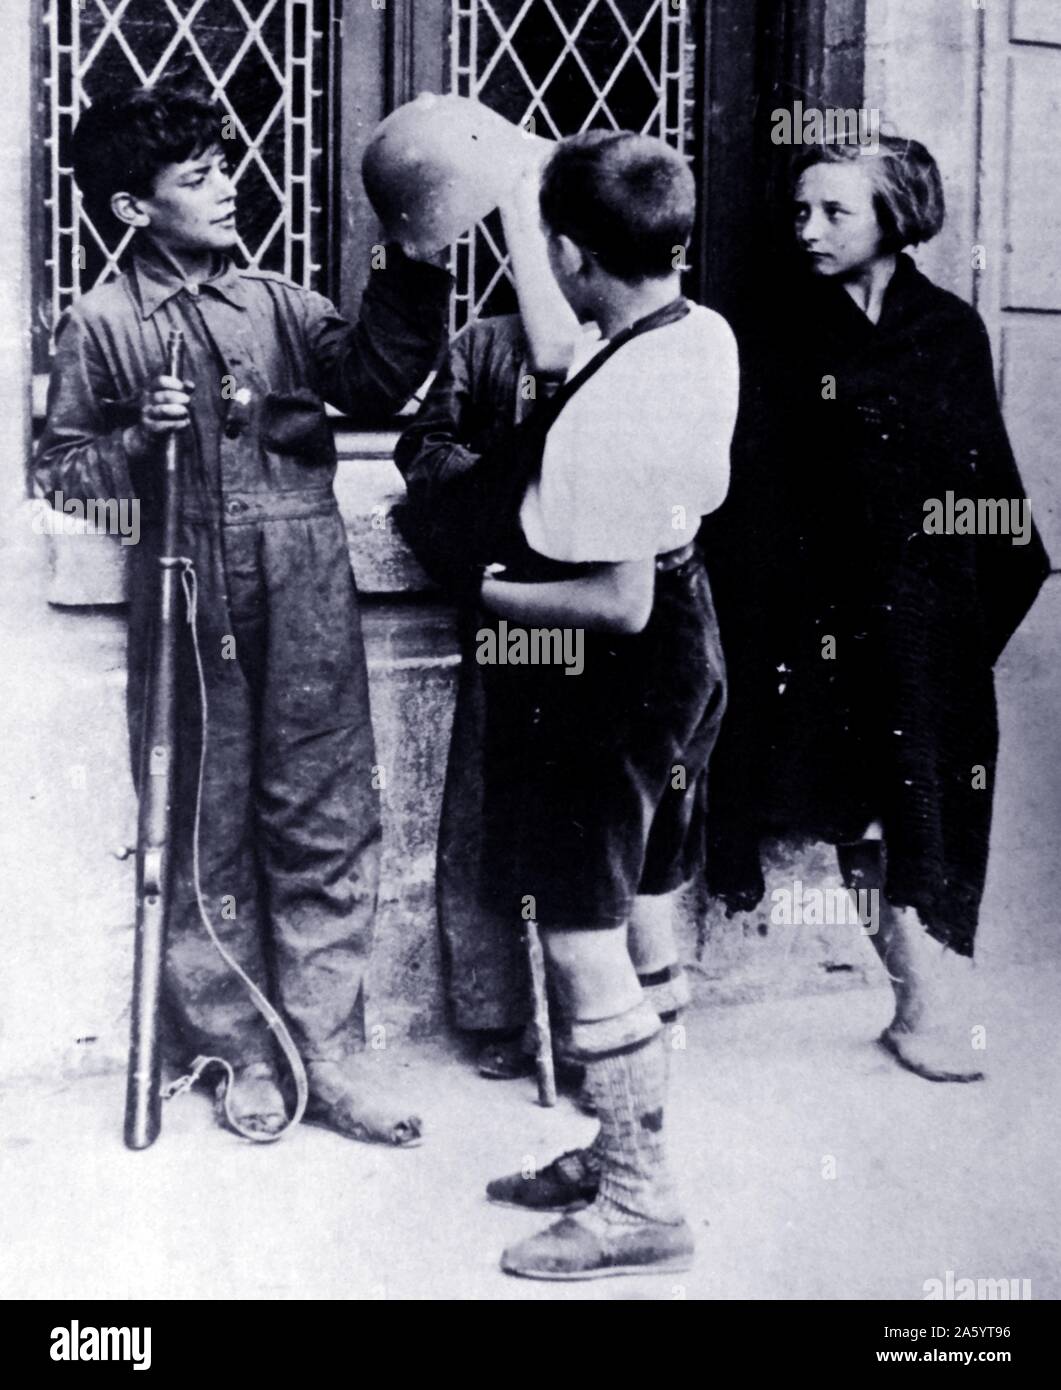 Trois garçons et une fille avec des armes au printemps de 1937 au cours de la guerre civile espagnole Banque D'Images